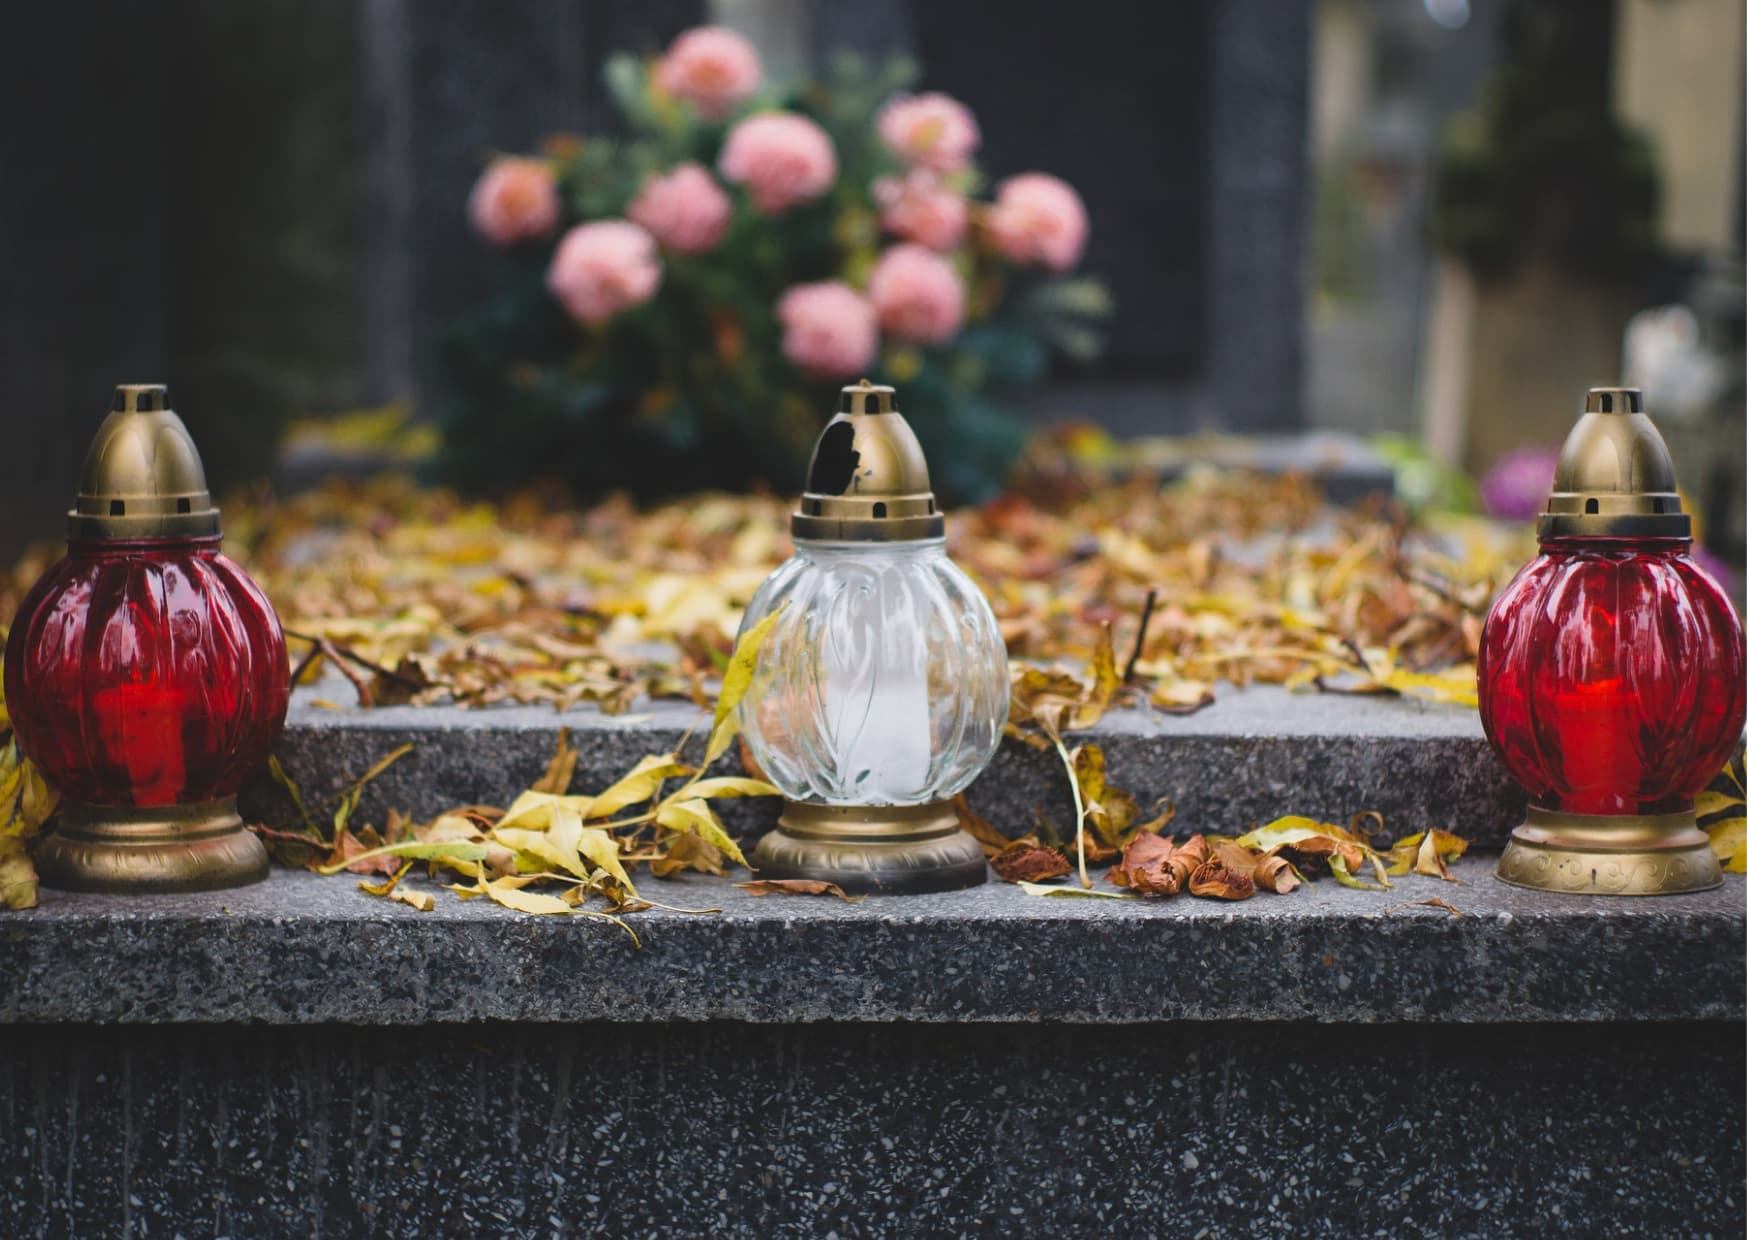 odpady na cmentarzu kwiatyiznicze small - Pielęgnuj pamięć i bądź eko bohaterem